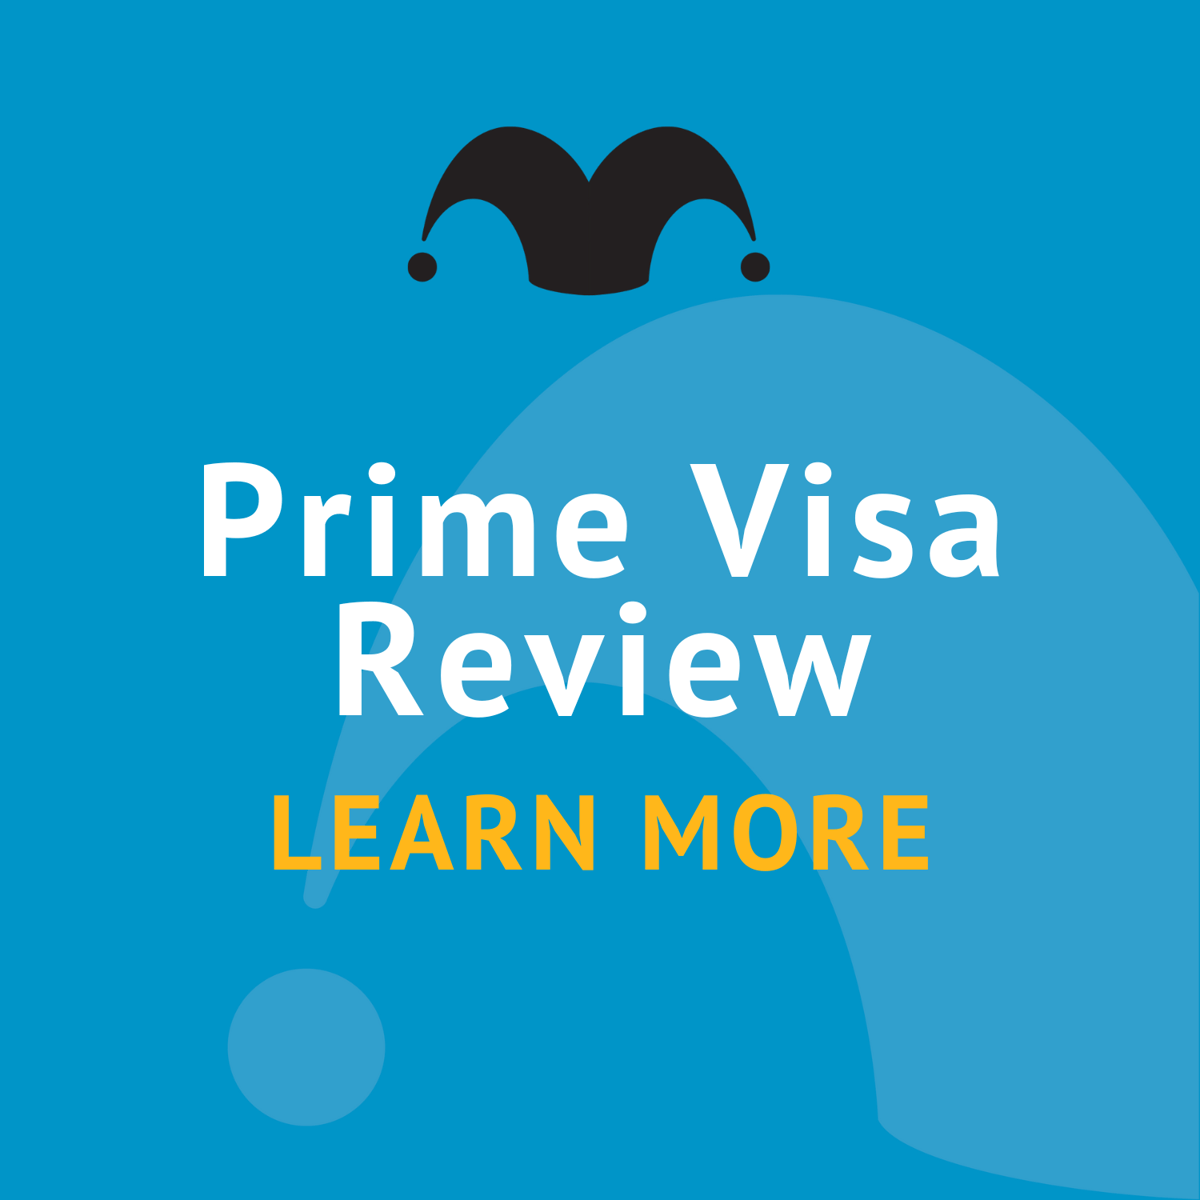  Prime Visa